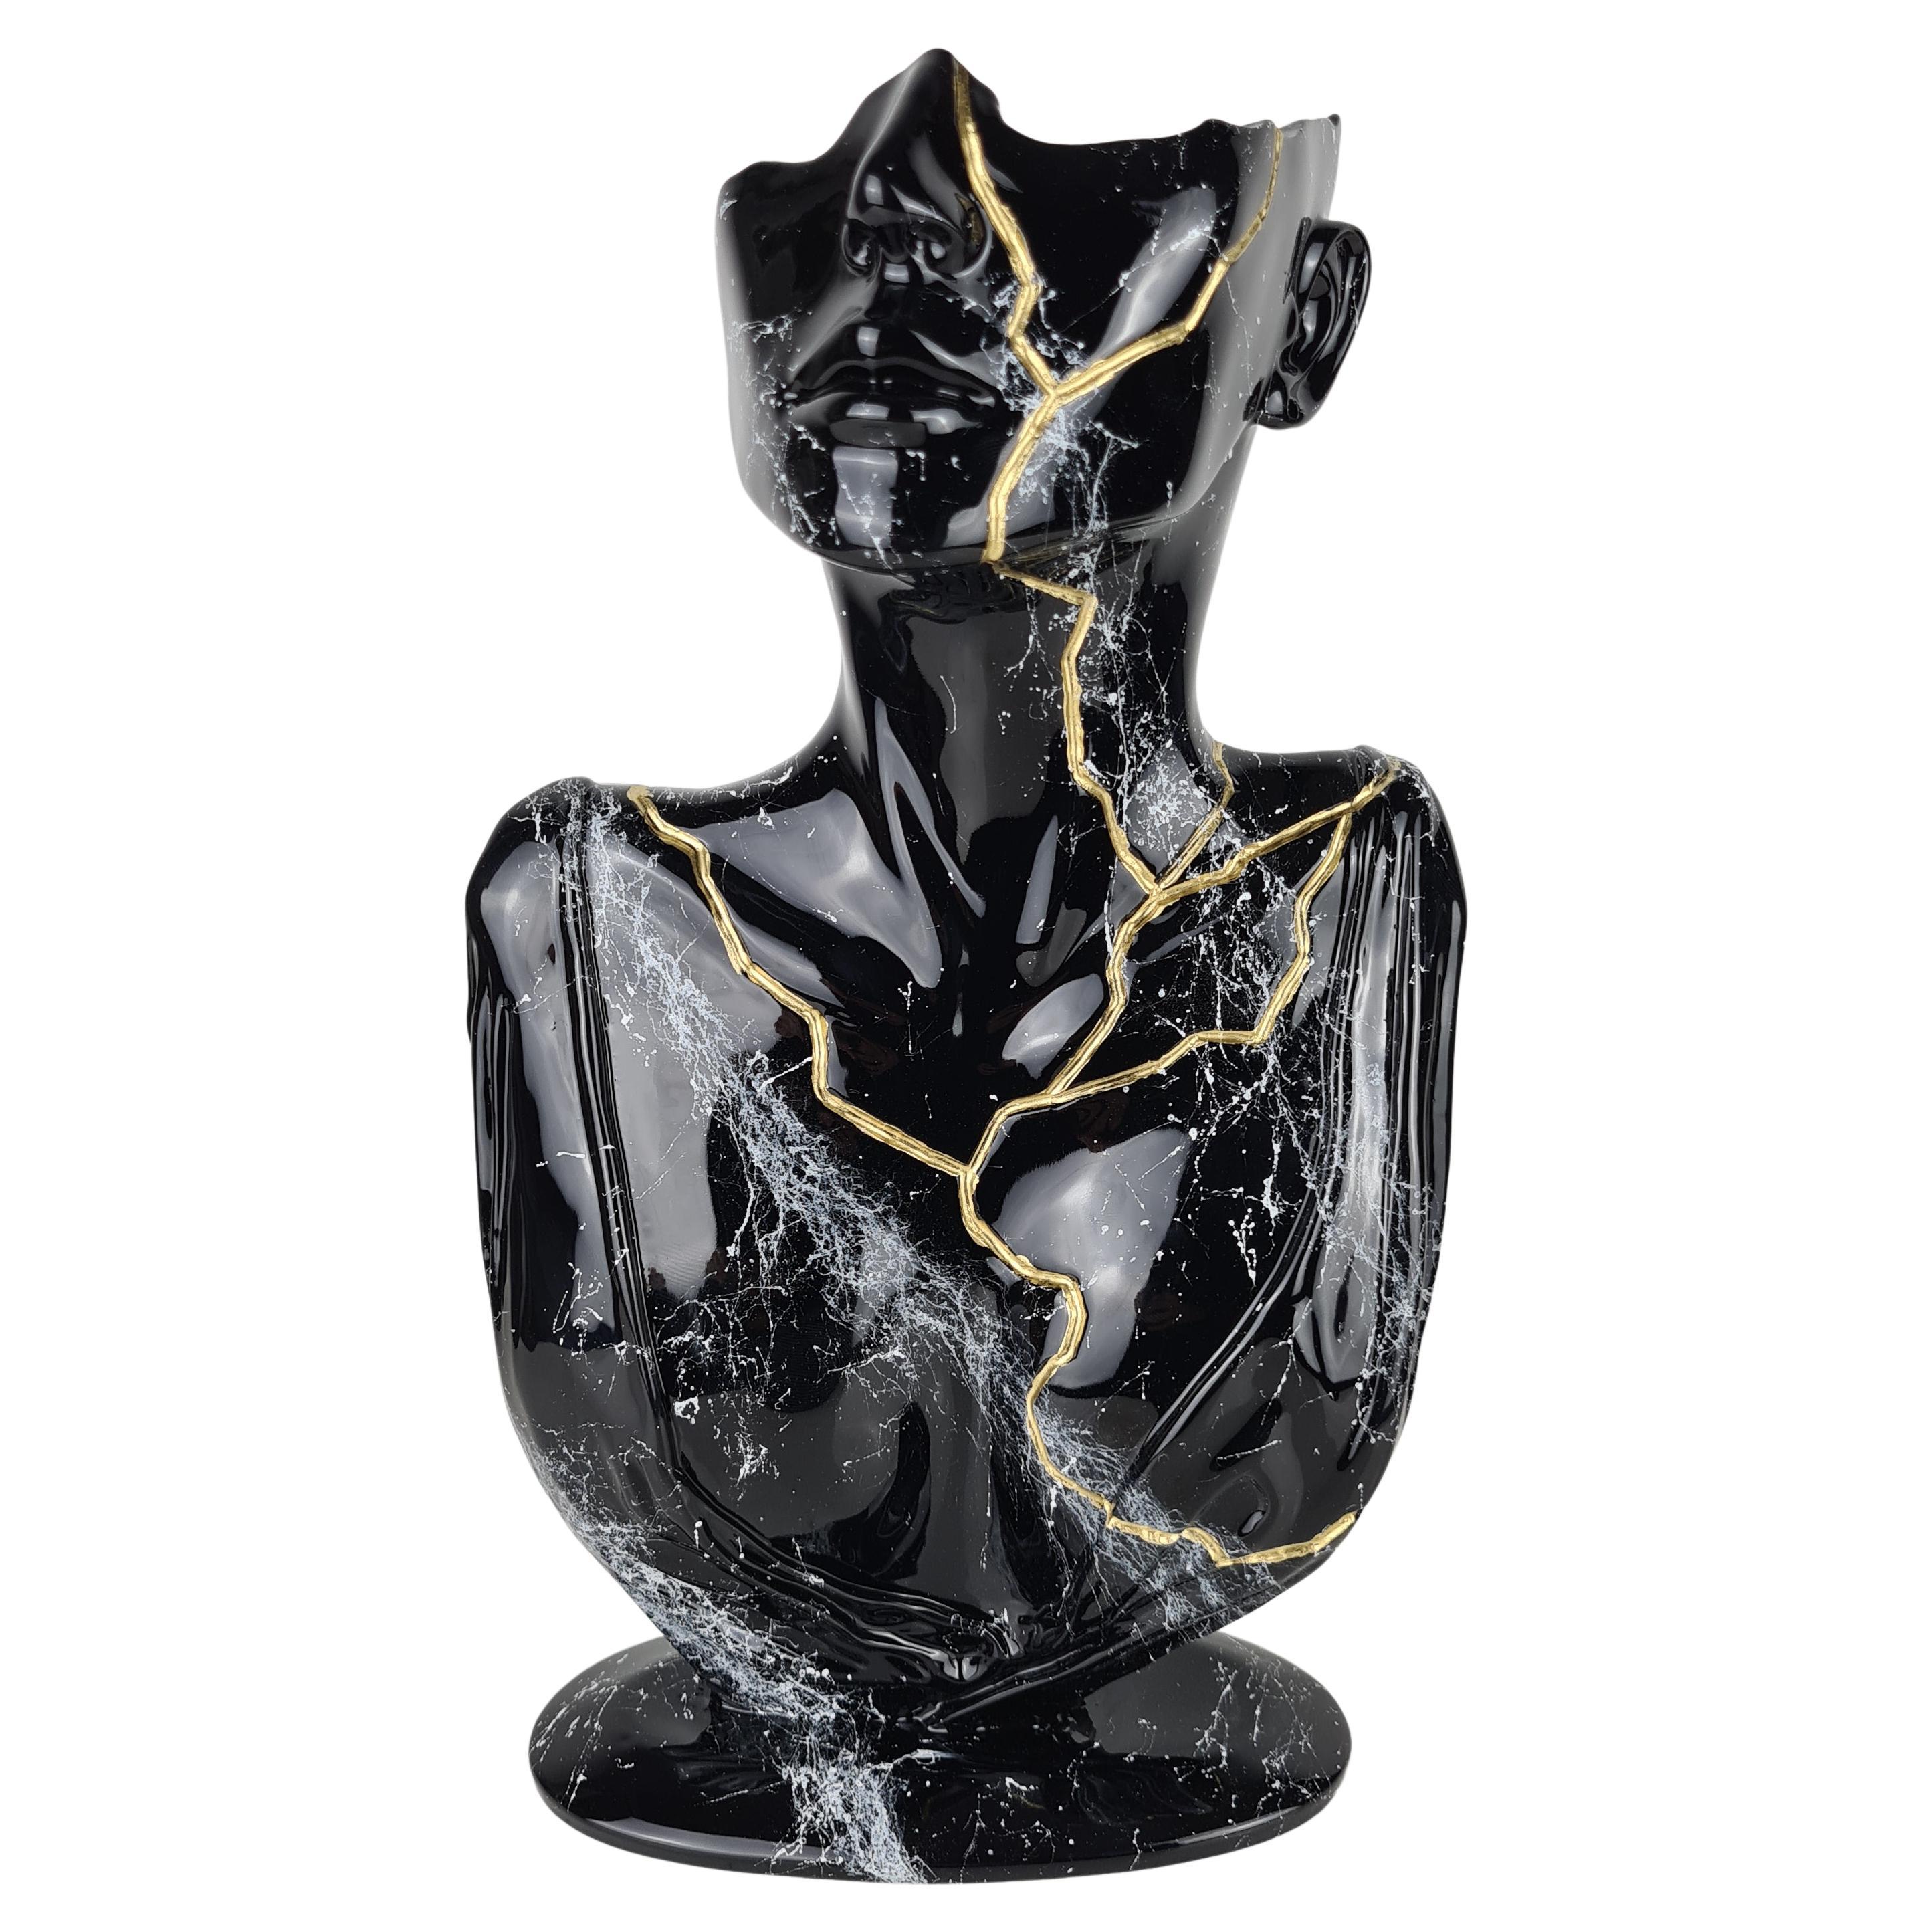 « Red Face », noir et or, 2021, sculpture avec poudre de marbre et résine. Ltd.